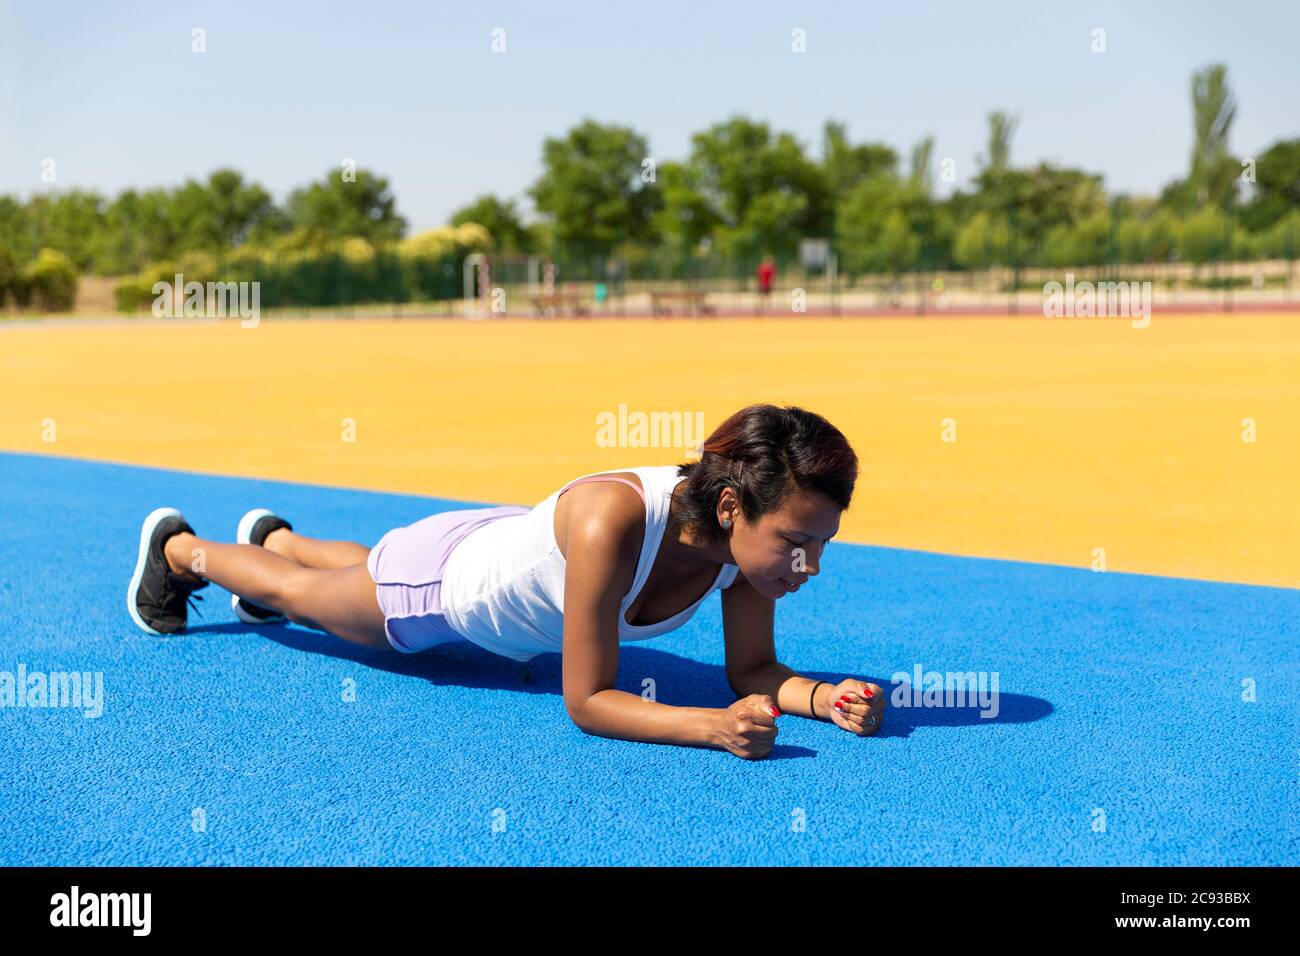 Athlète féminine faisant des abdominaux dans les installations sportives en plein air. Espace pour le texte. Concept de sport et de vie saine. Banque D'Images